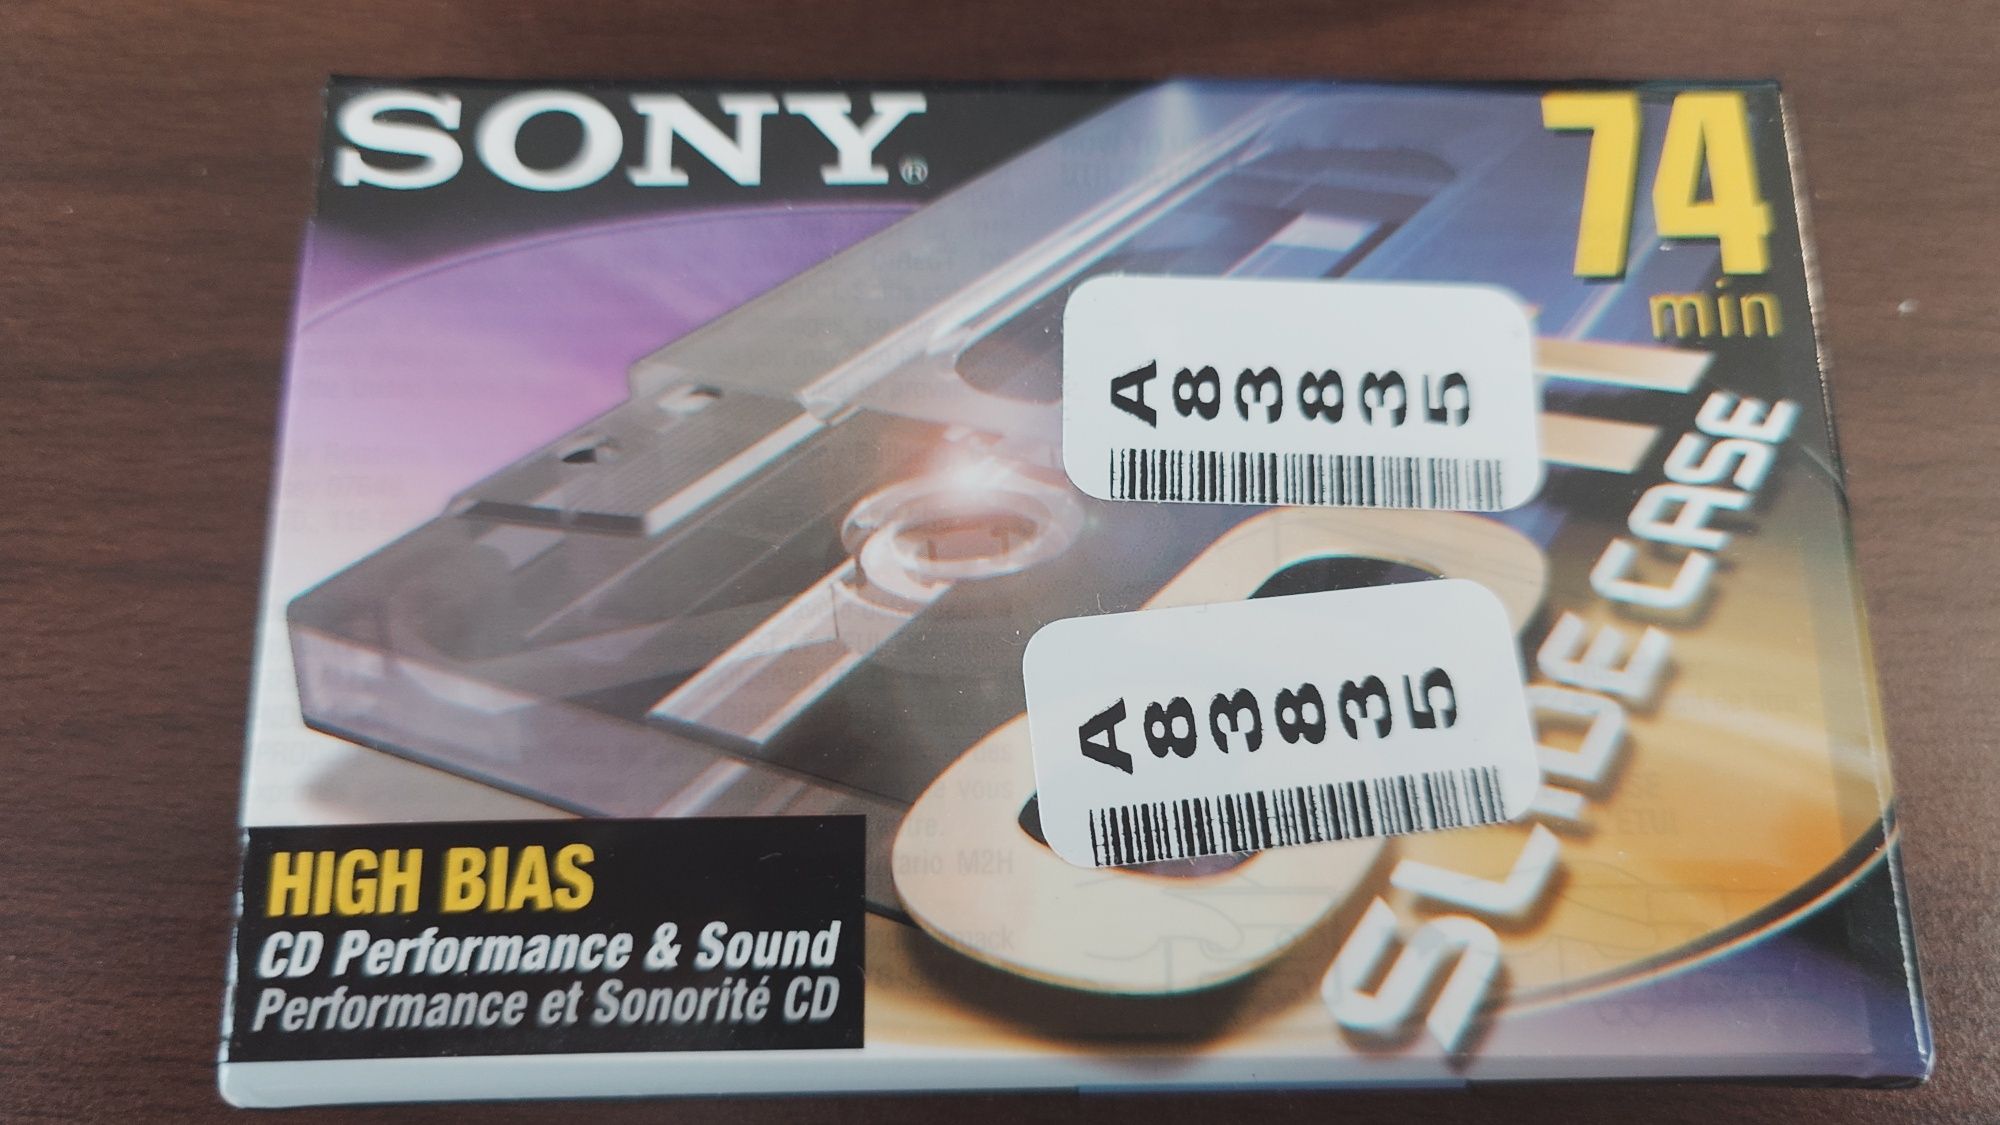 Vând lot 10 casete Sony CD-IT Chrome 74 min sigilate